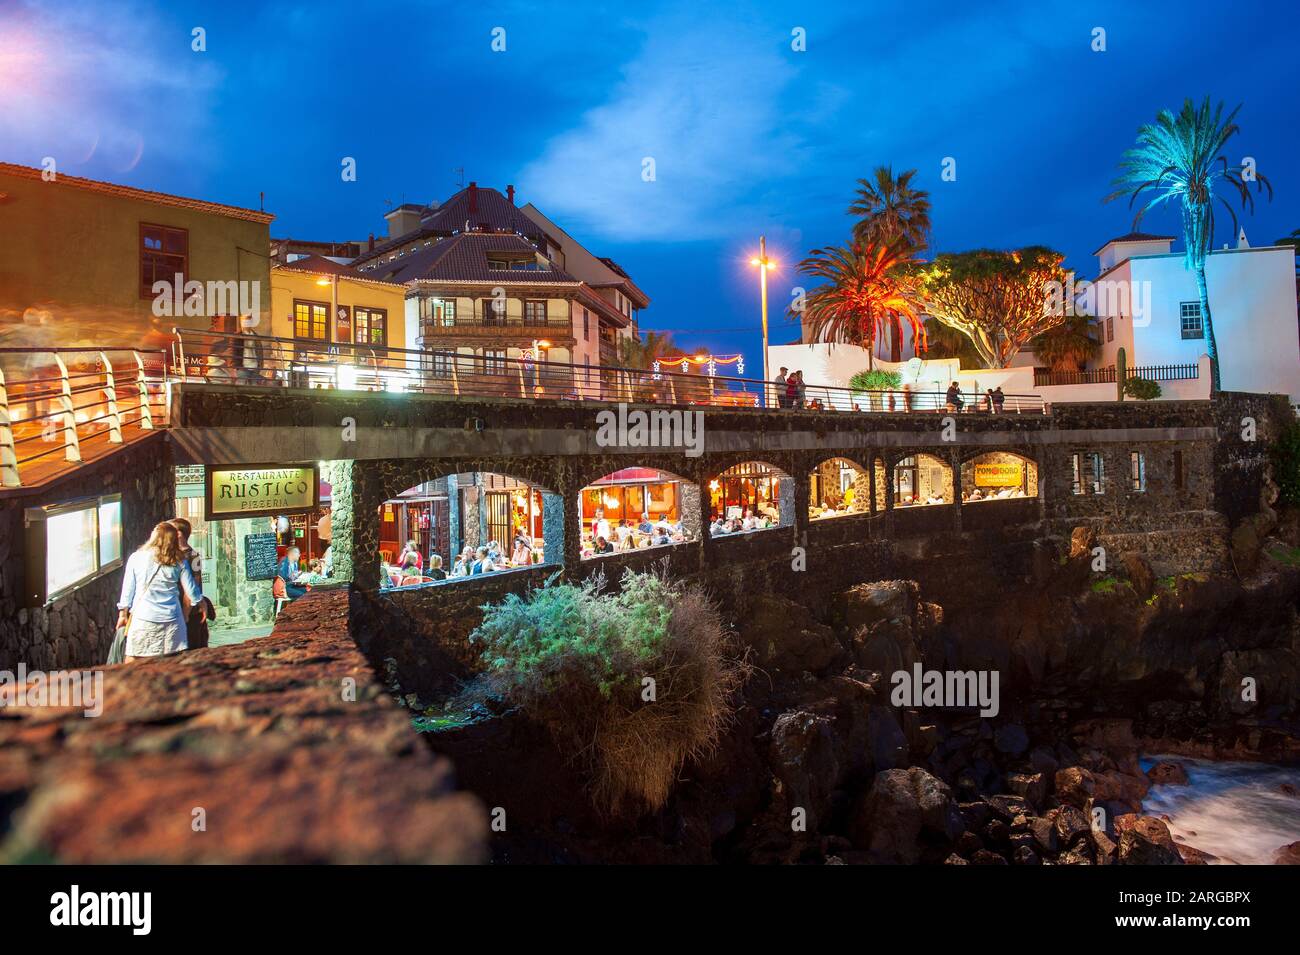 ISLAS Canarias TENERIFE, ESPAÑA - 25 Dic, 2019: Restaurante construido en la ciudad de Puerto de Cruz en la isla canaria de Tenerife Fotografía de stock - Alamy